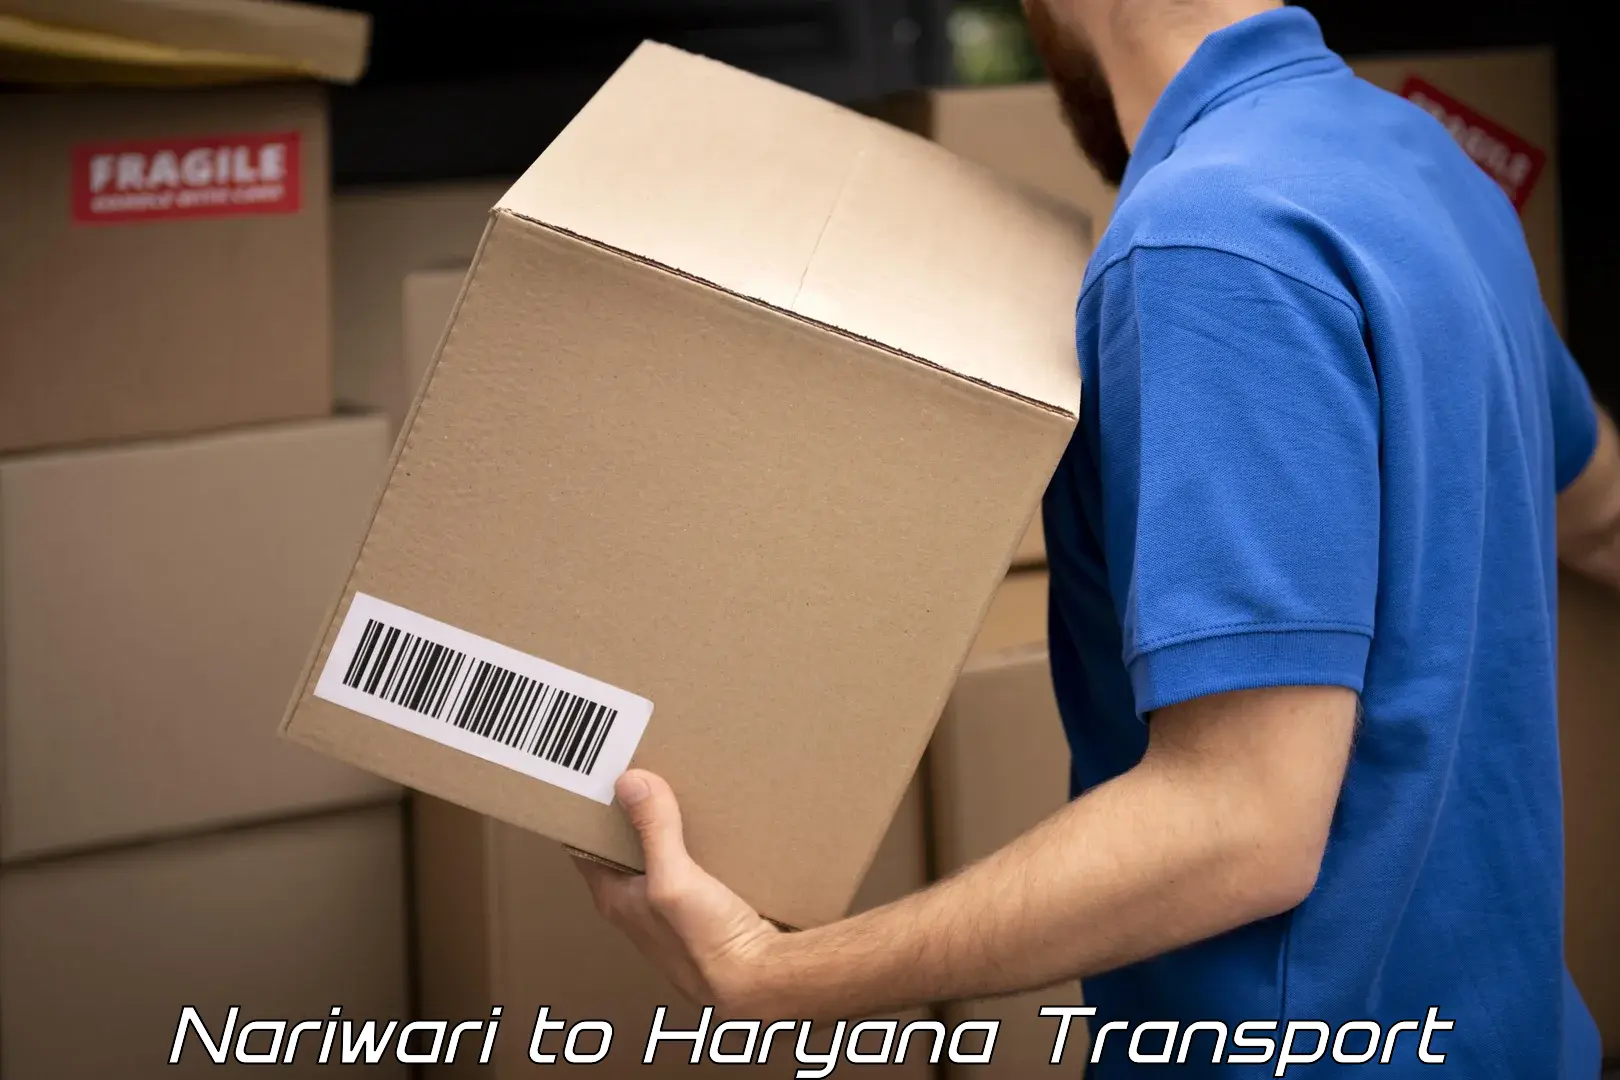 International cargo transportation services Nariwari to Narwana